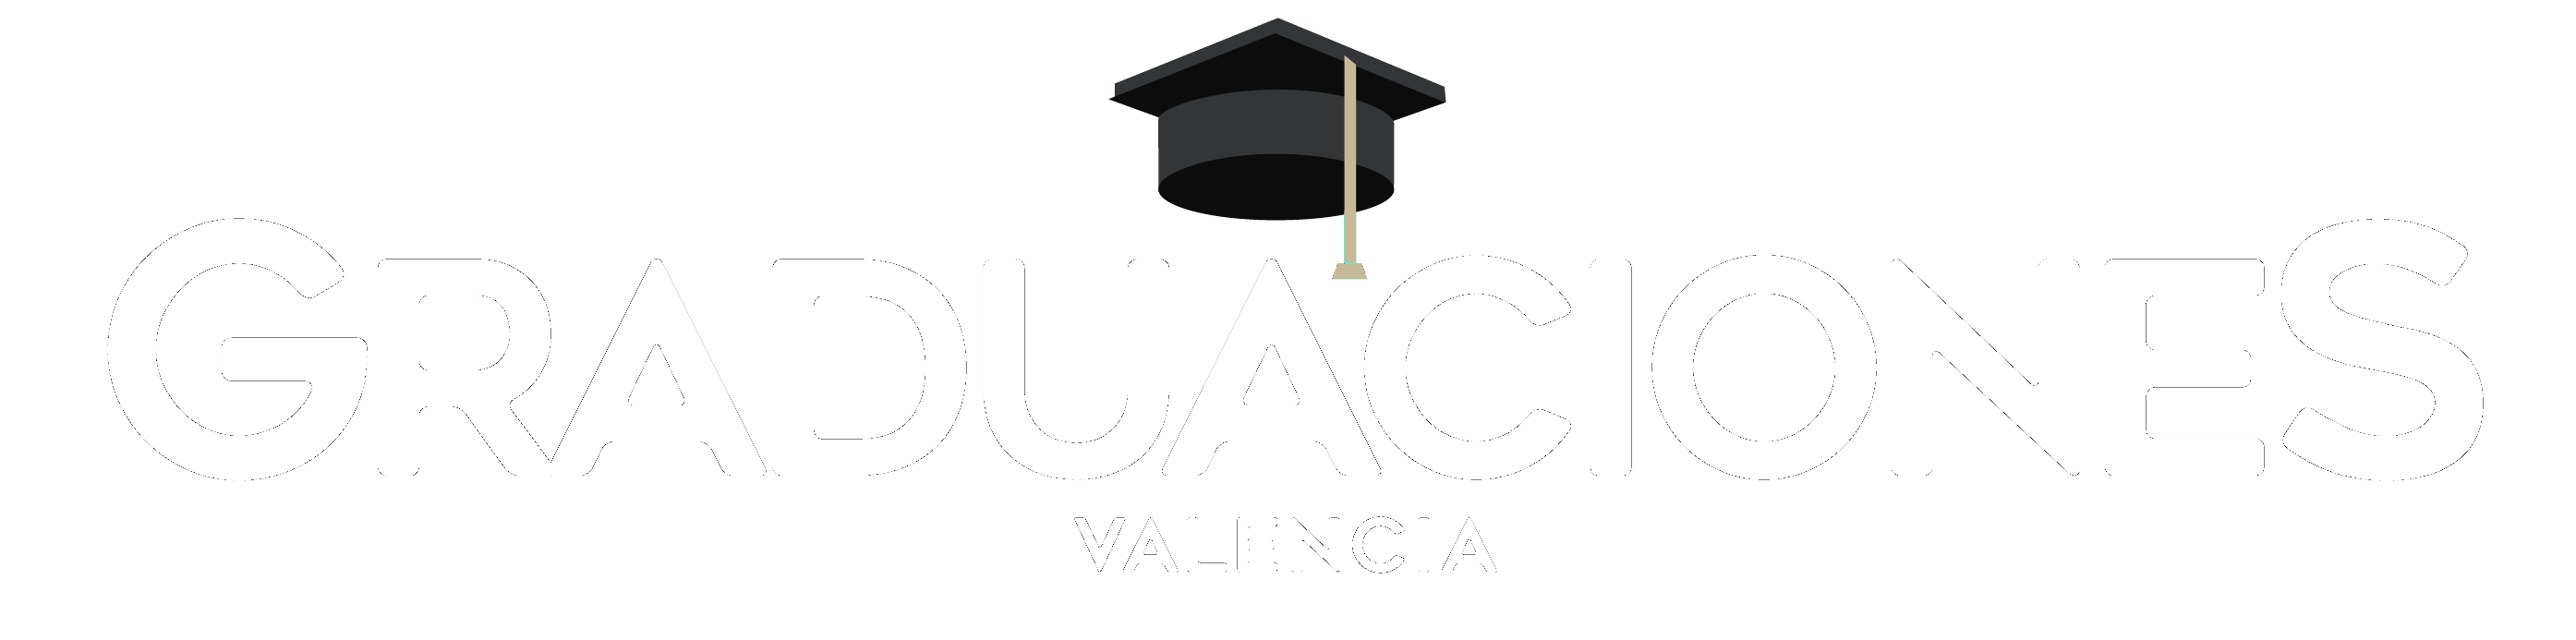 Graduaciones Valencia